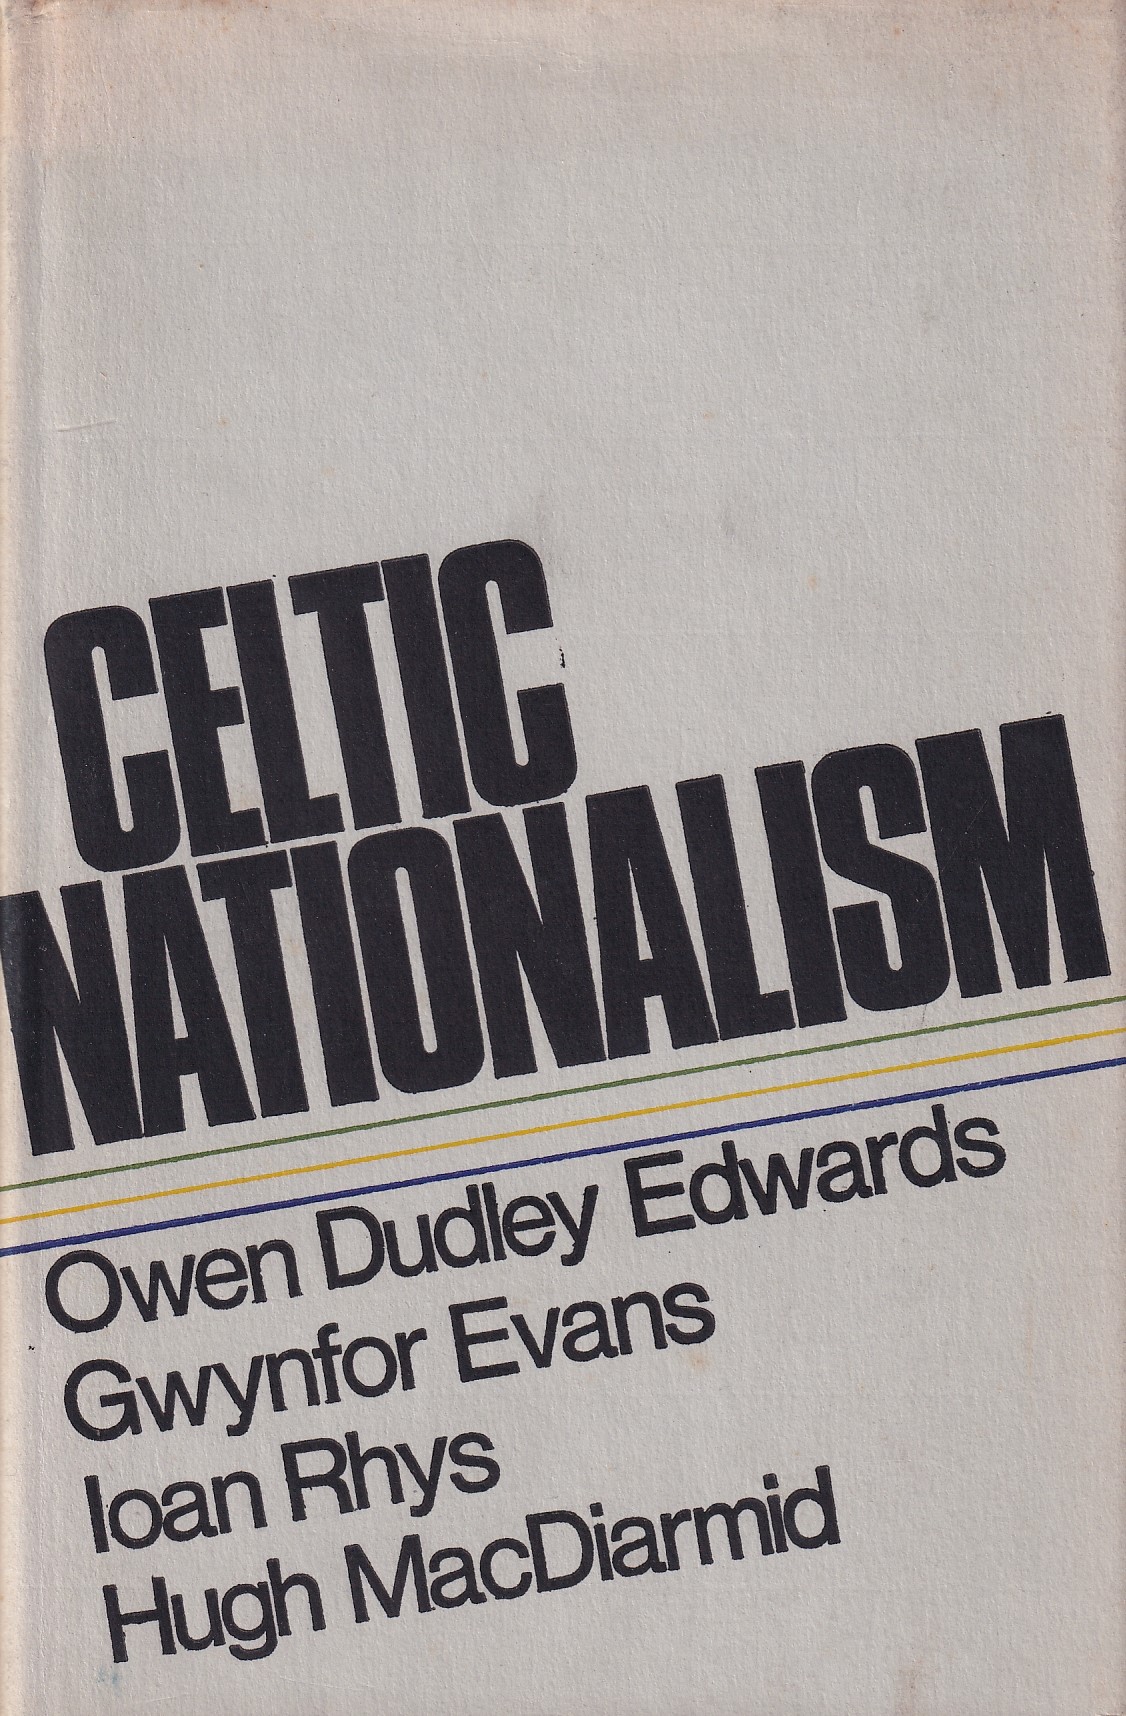 Celtic Nationalism by Owen Dudley Edwards, Gwynfor Evans, Iaon Rhys & Hugh MacDiarmid